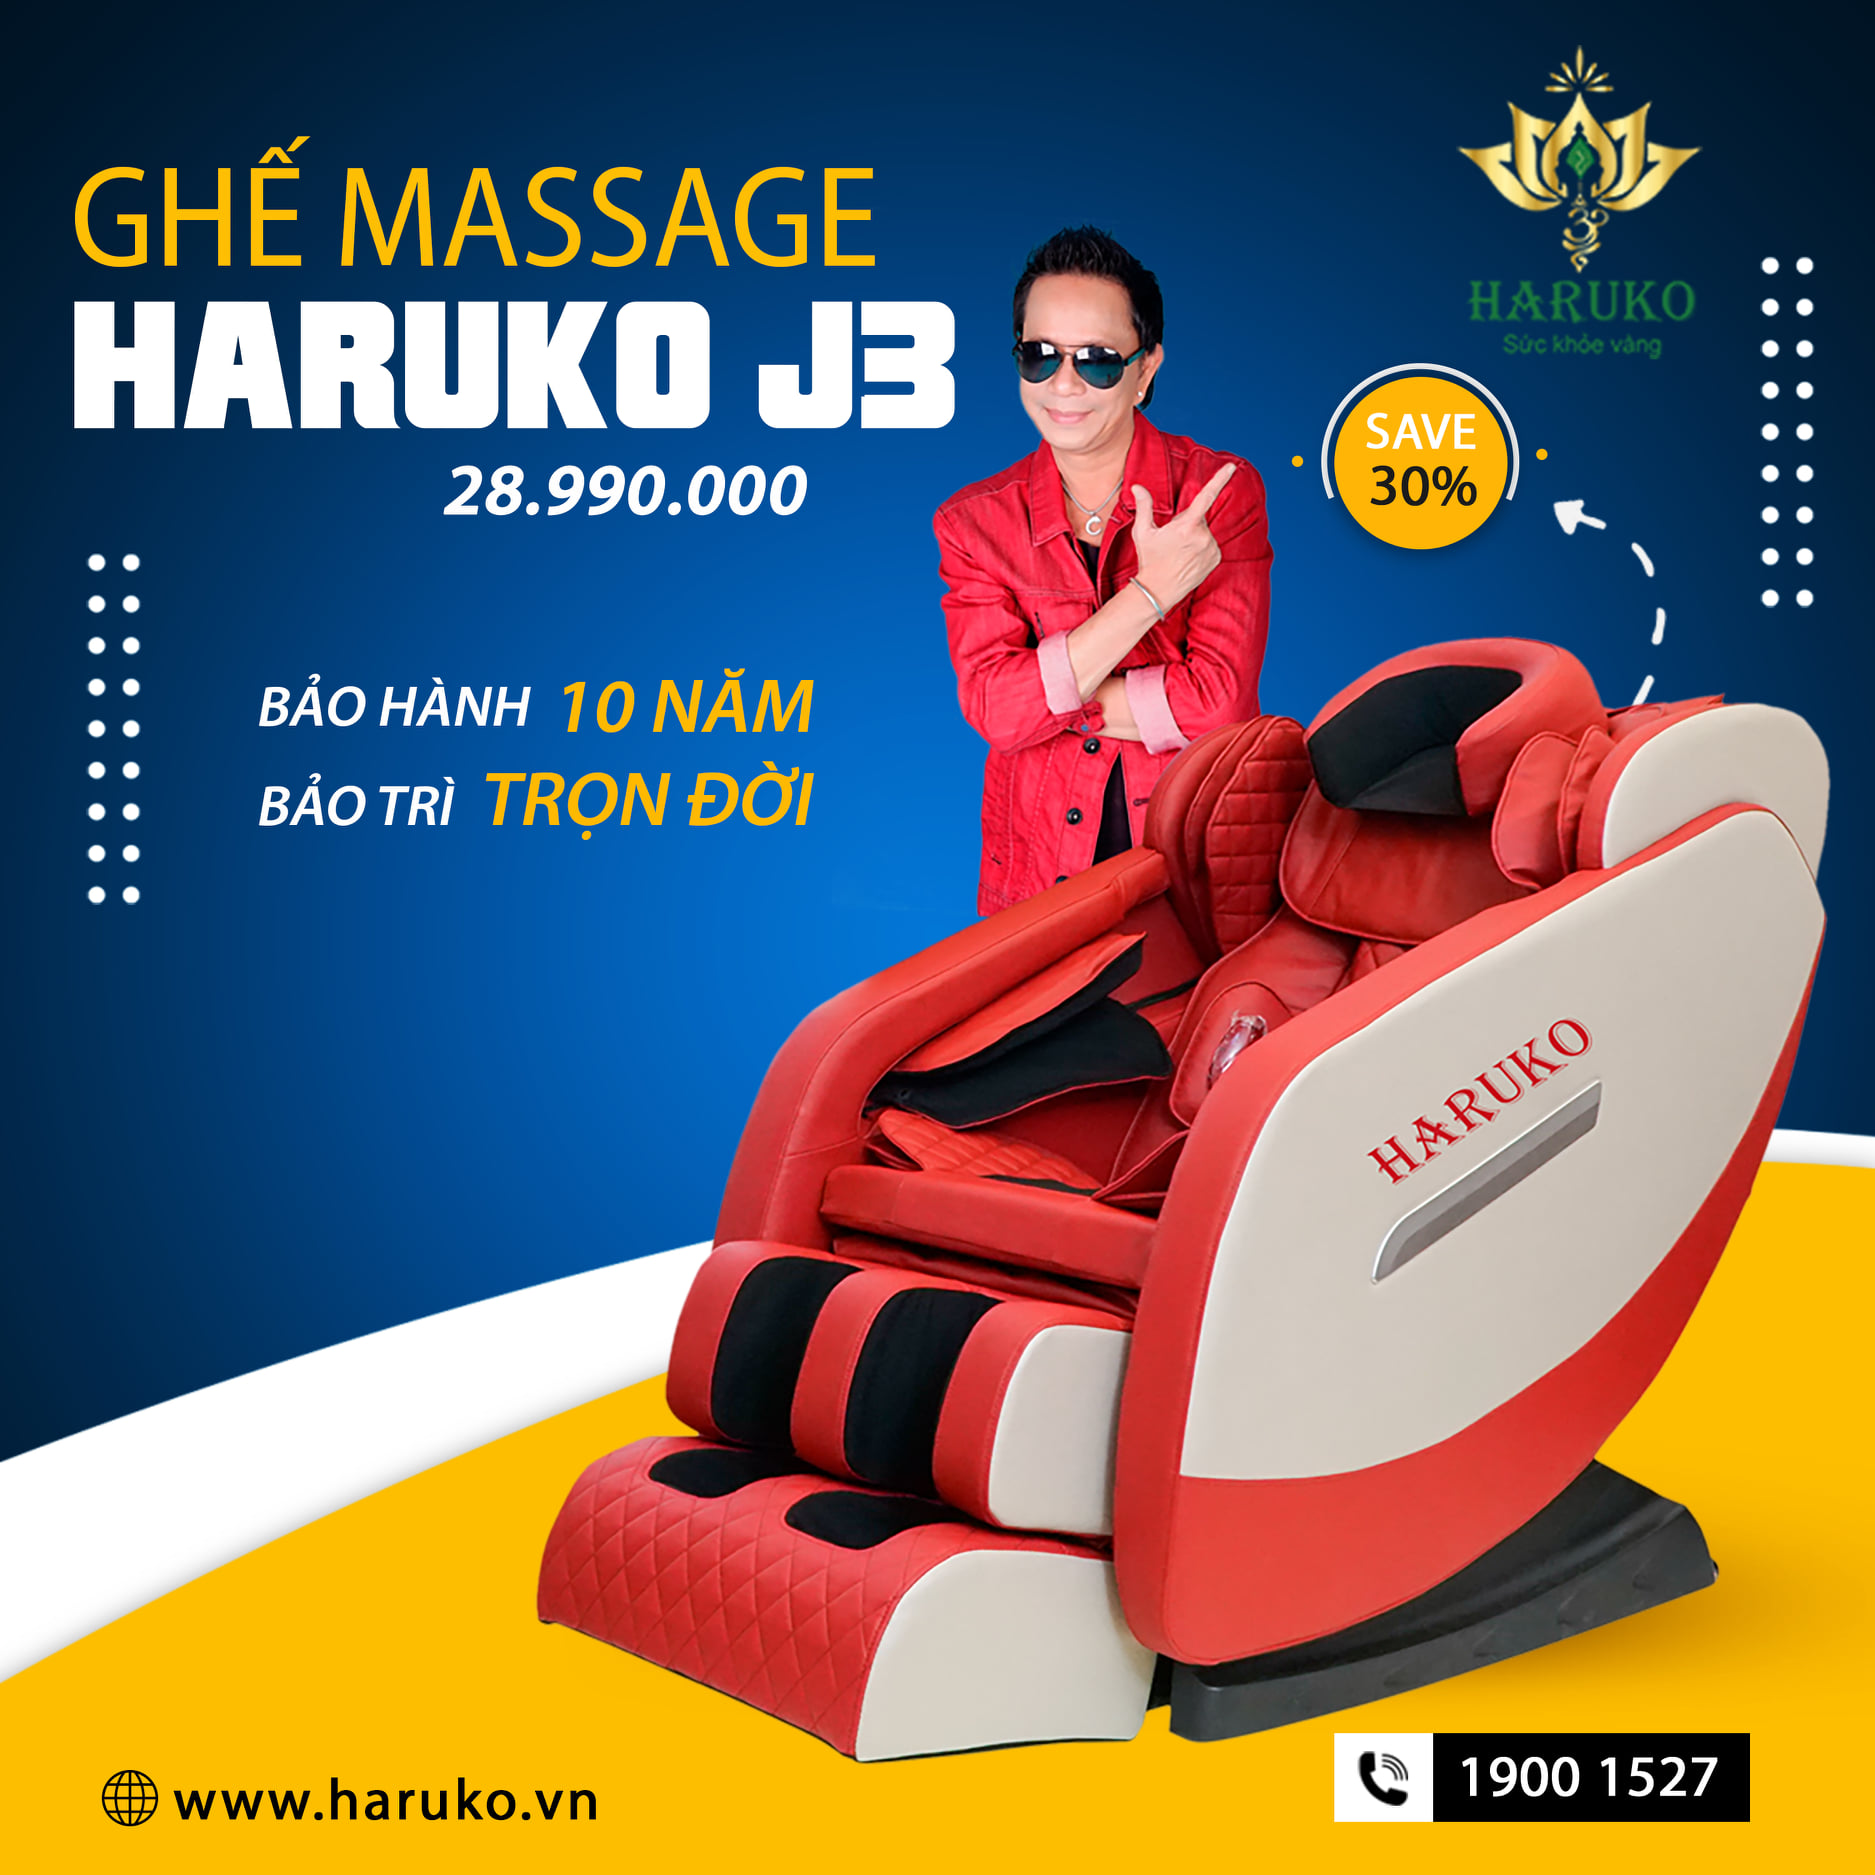 Ghế massage Haruko-J3 nổi bật với con lăn 4D hiện đại và hiệu quả với người dùng